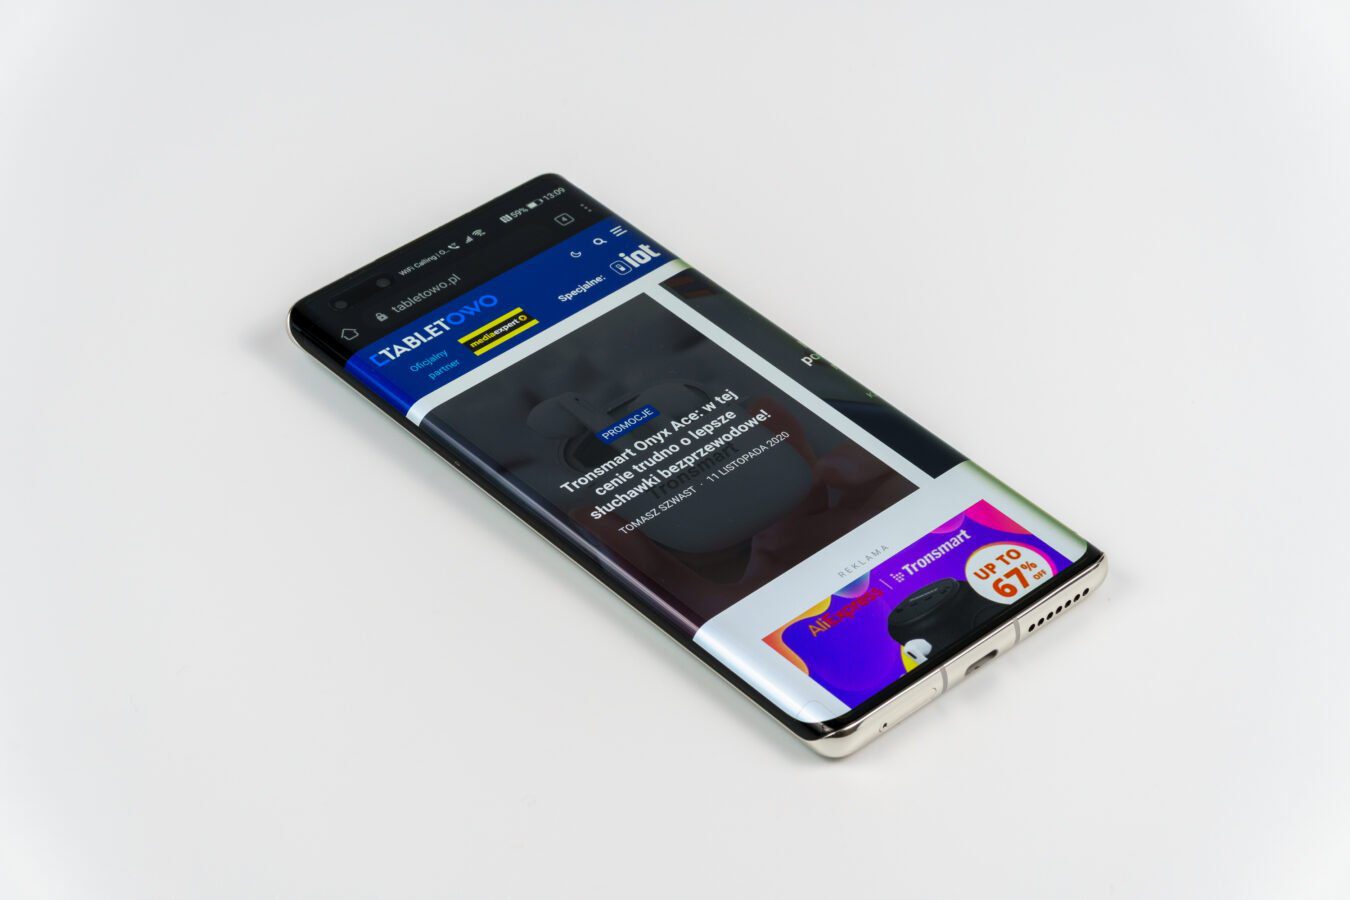 Huawei-Smartphone mit zusätzlichem Bildschirm für Visualisierungen. Dies kann eine sehr praktische Lösung sein! 55